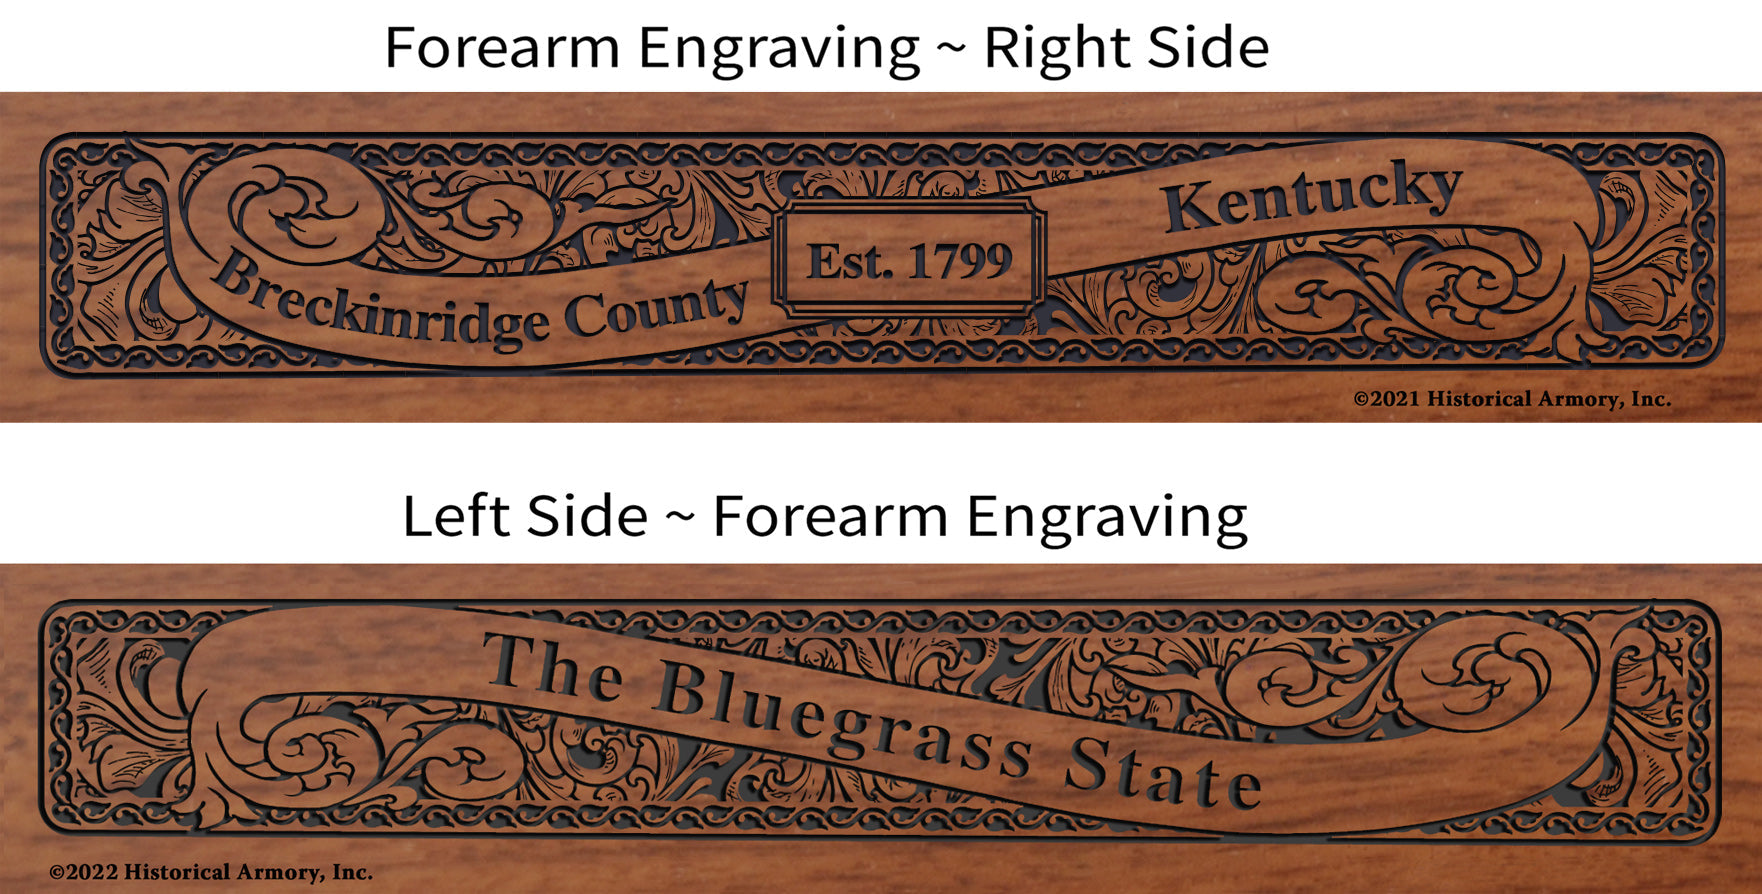 Breckinridge County Kentucky Engraved Rifle Forearm